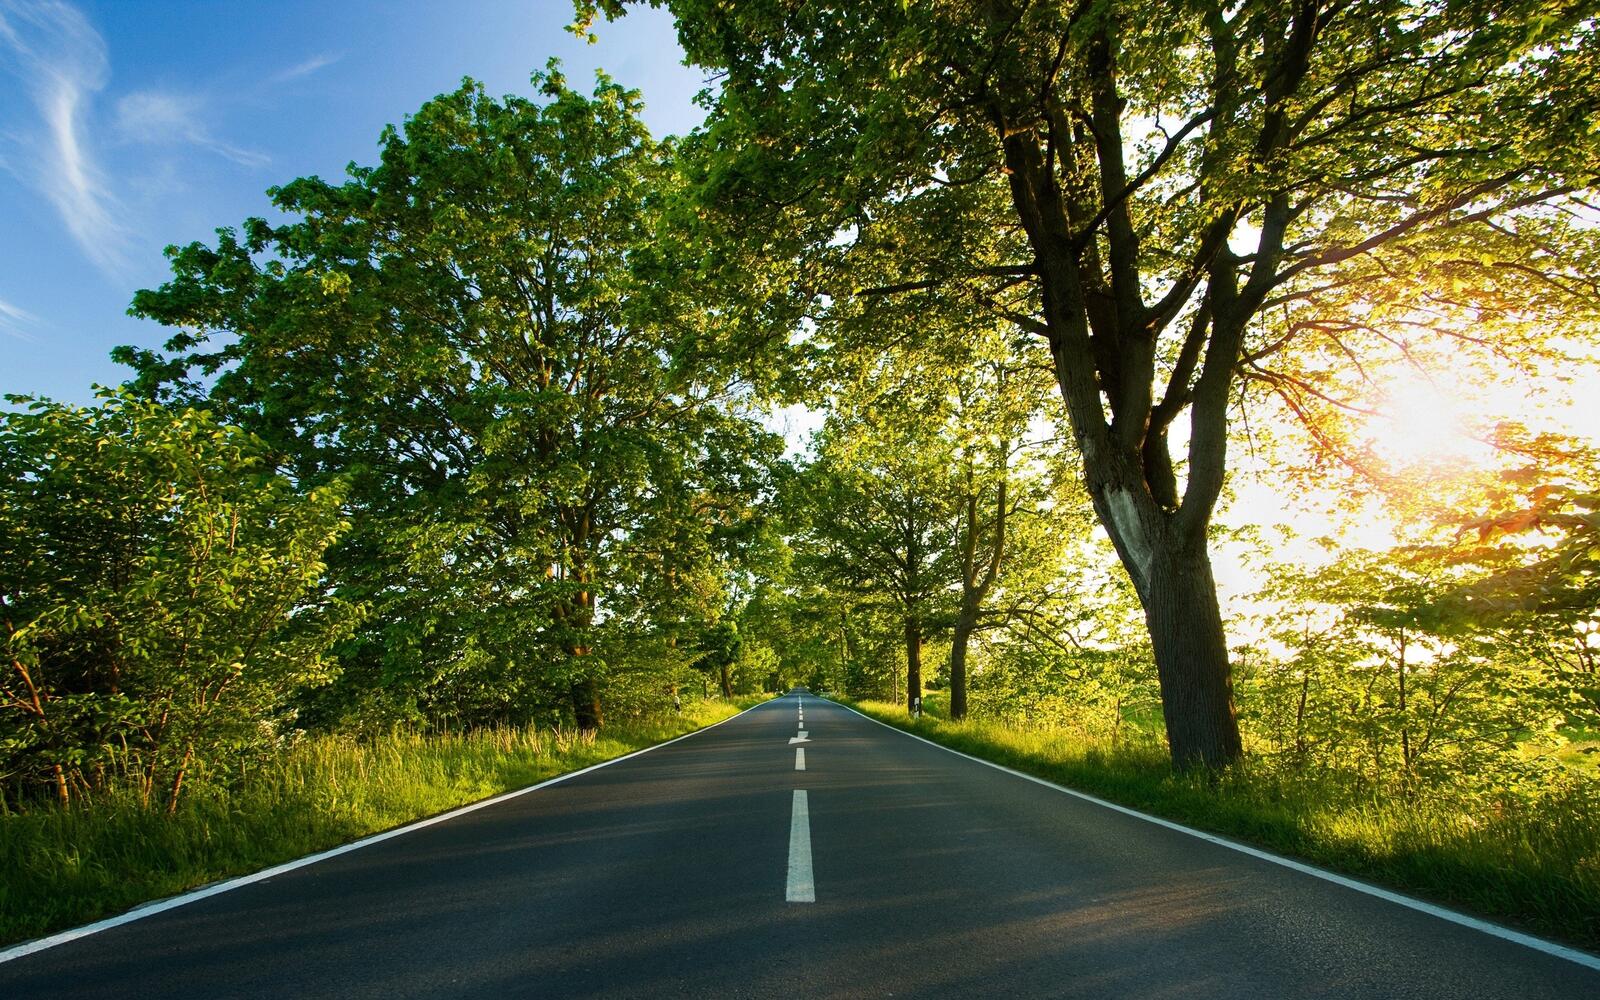 Бесплатное фото Длинная асфальтированная дорога вдоль деревьев с зеленой листвой